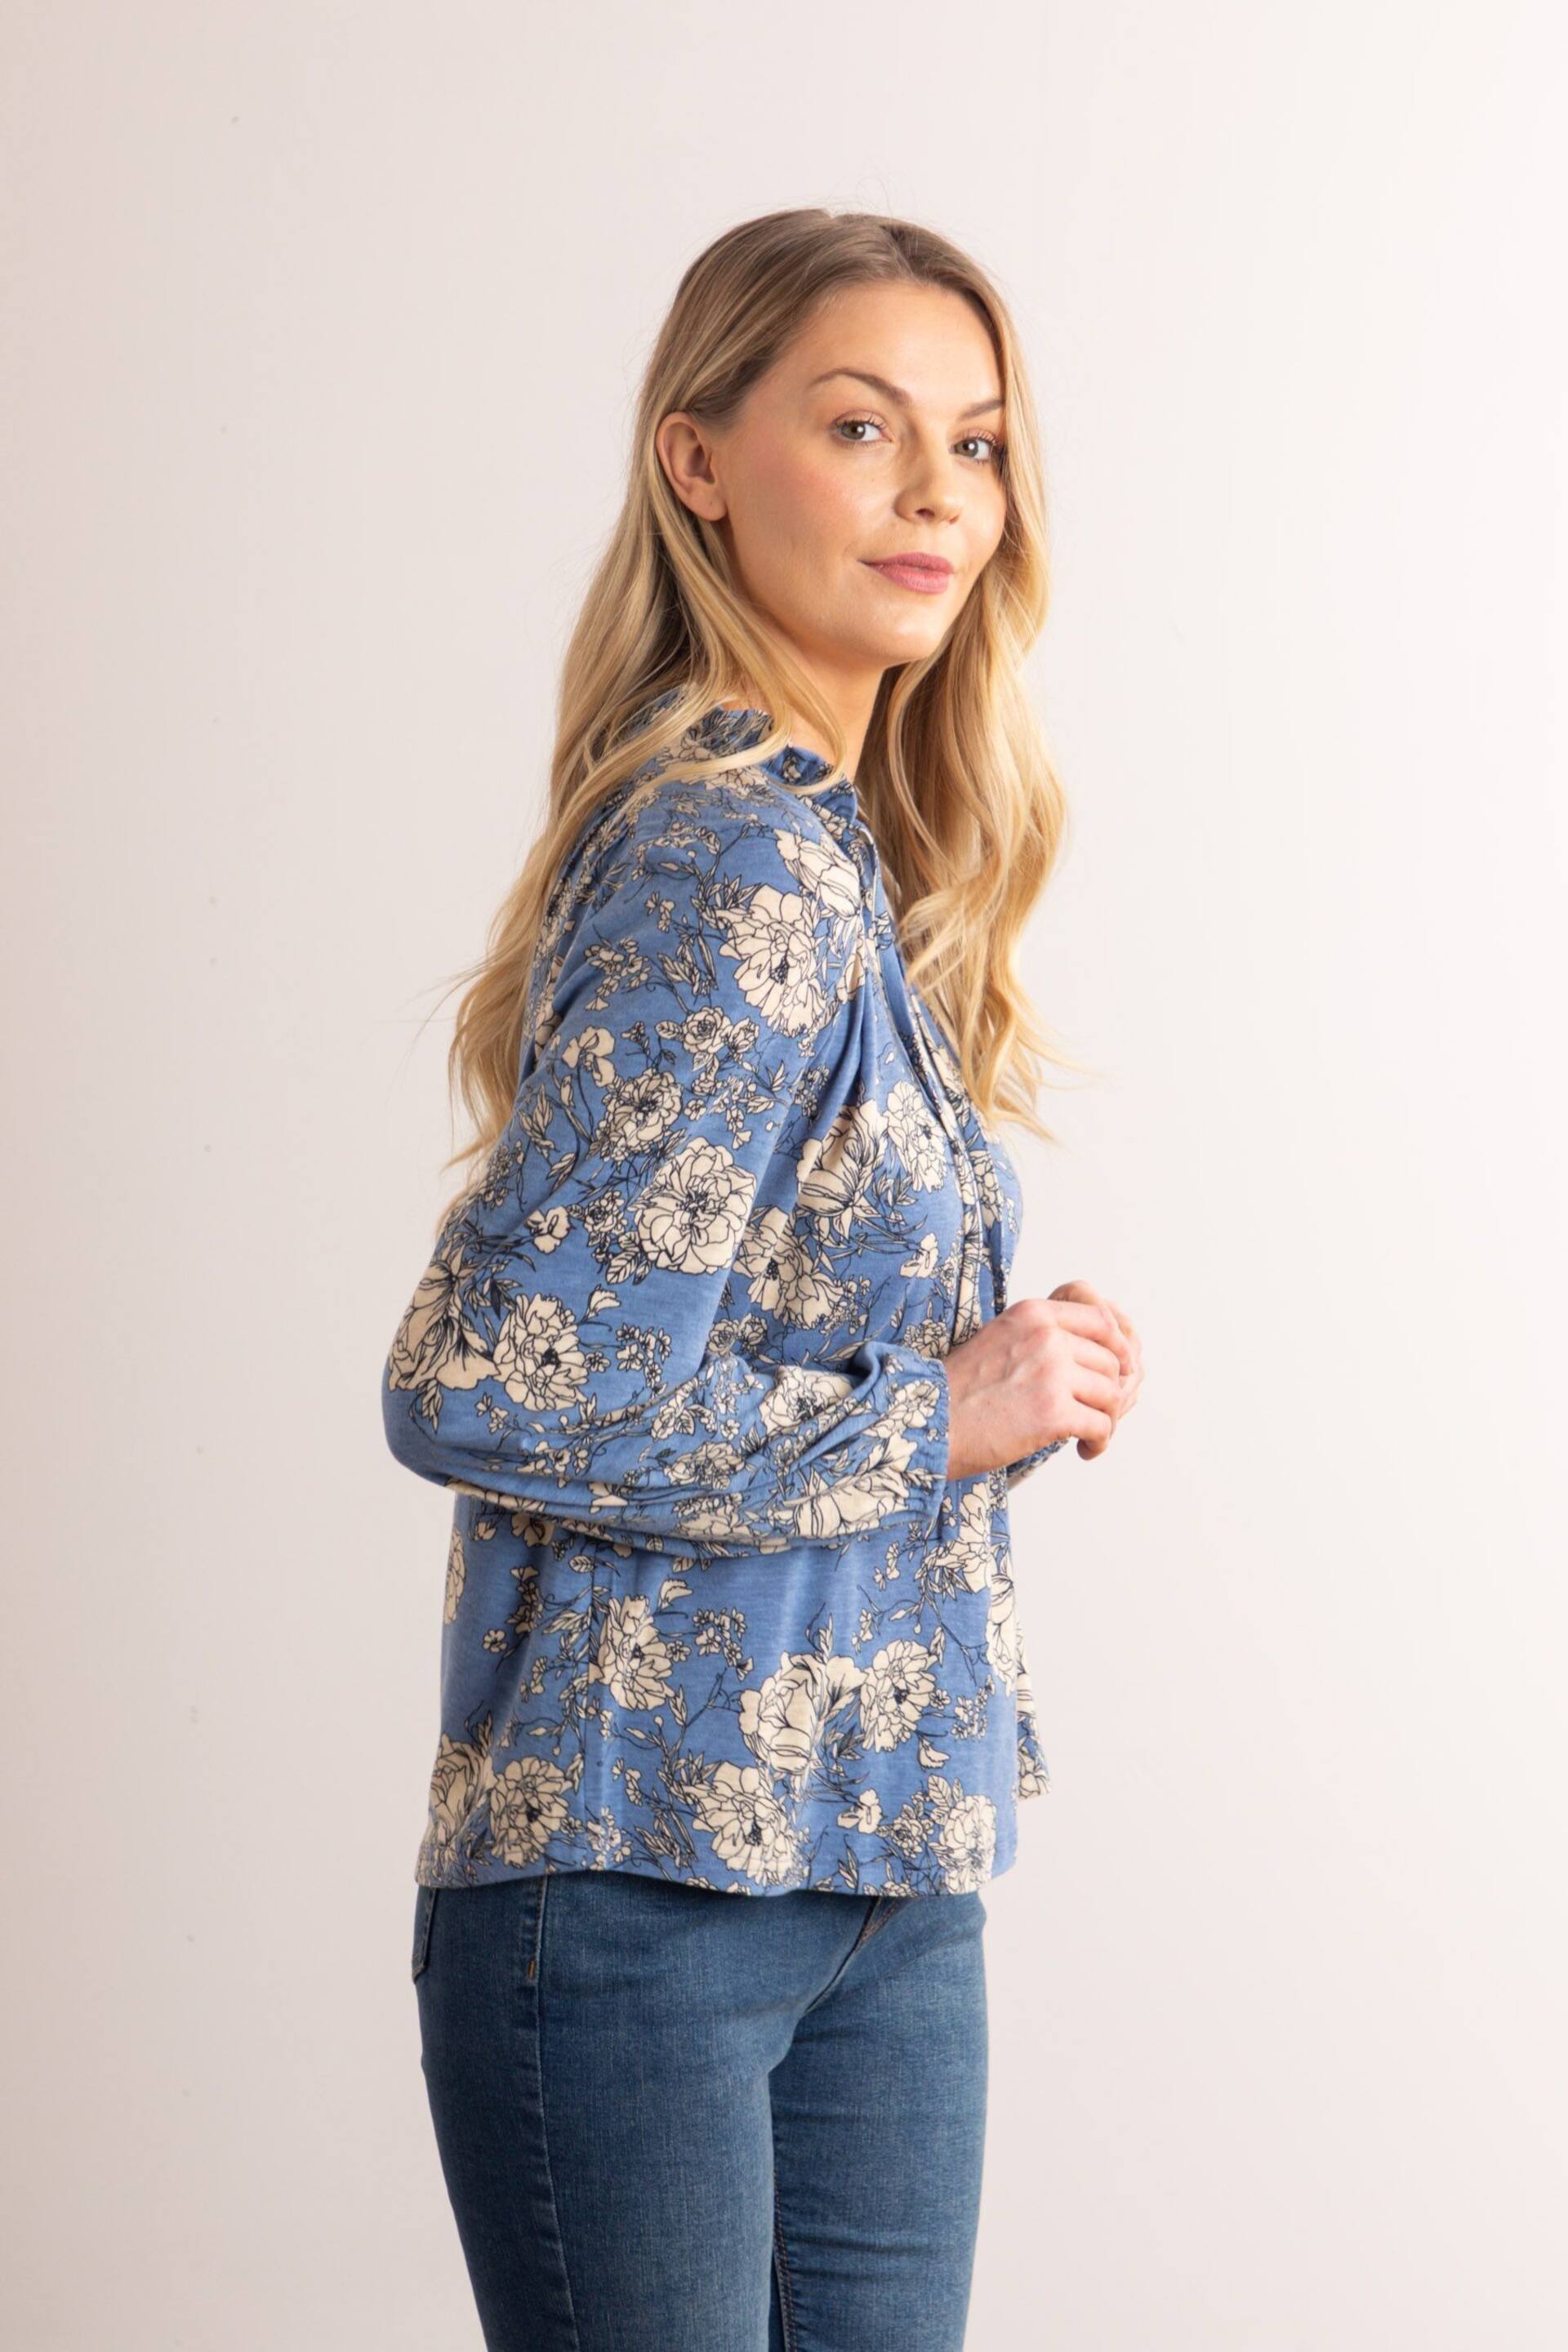 Lakeland Clothing Blue Mia Jersey Blouse - Image 3 of 5